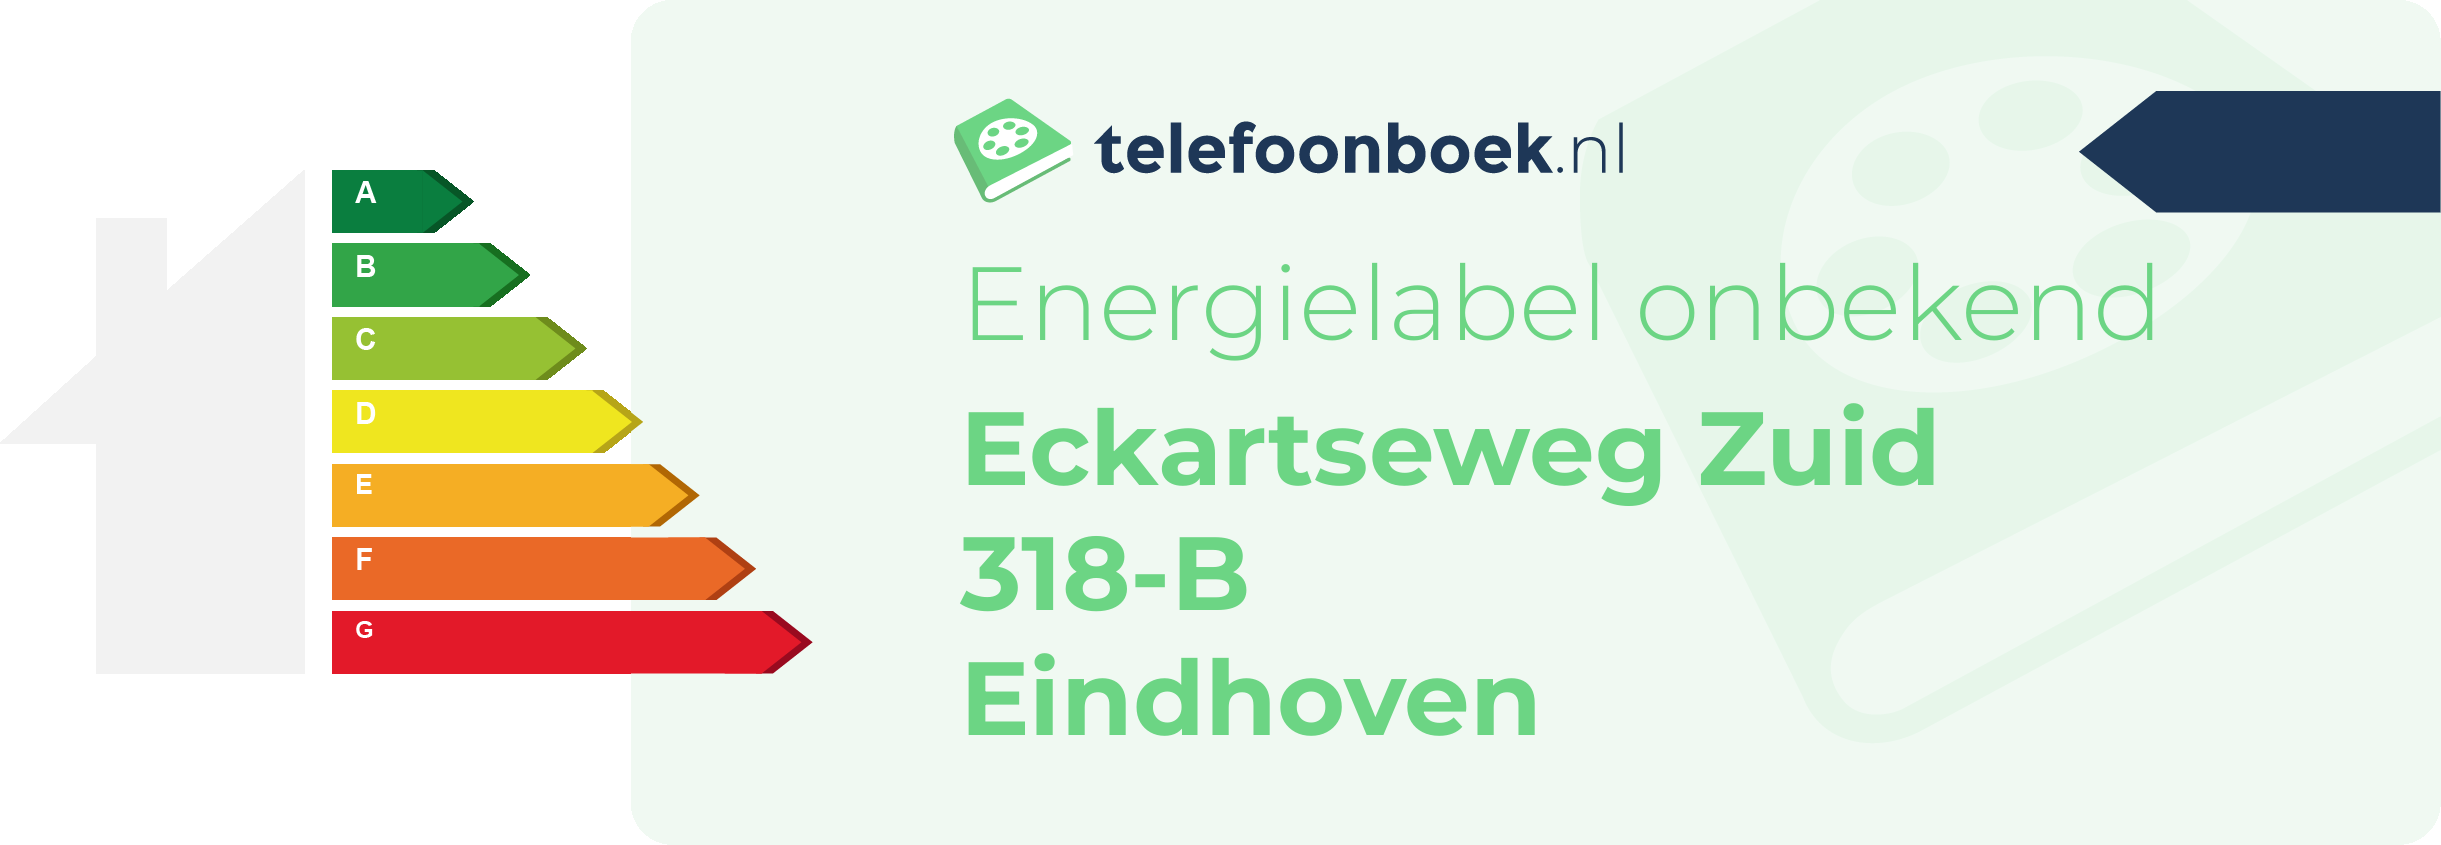 Energielabel Eckartseweg Zuid 318-B Eindhoven